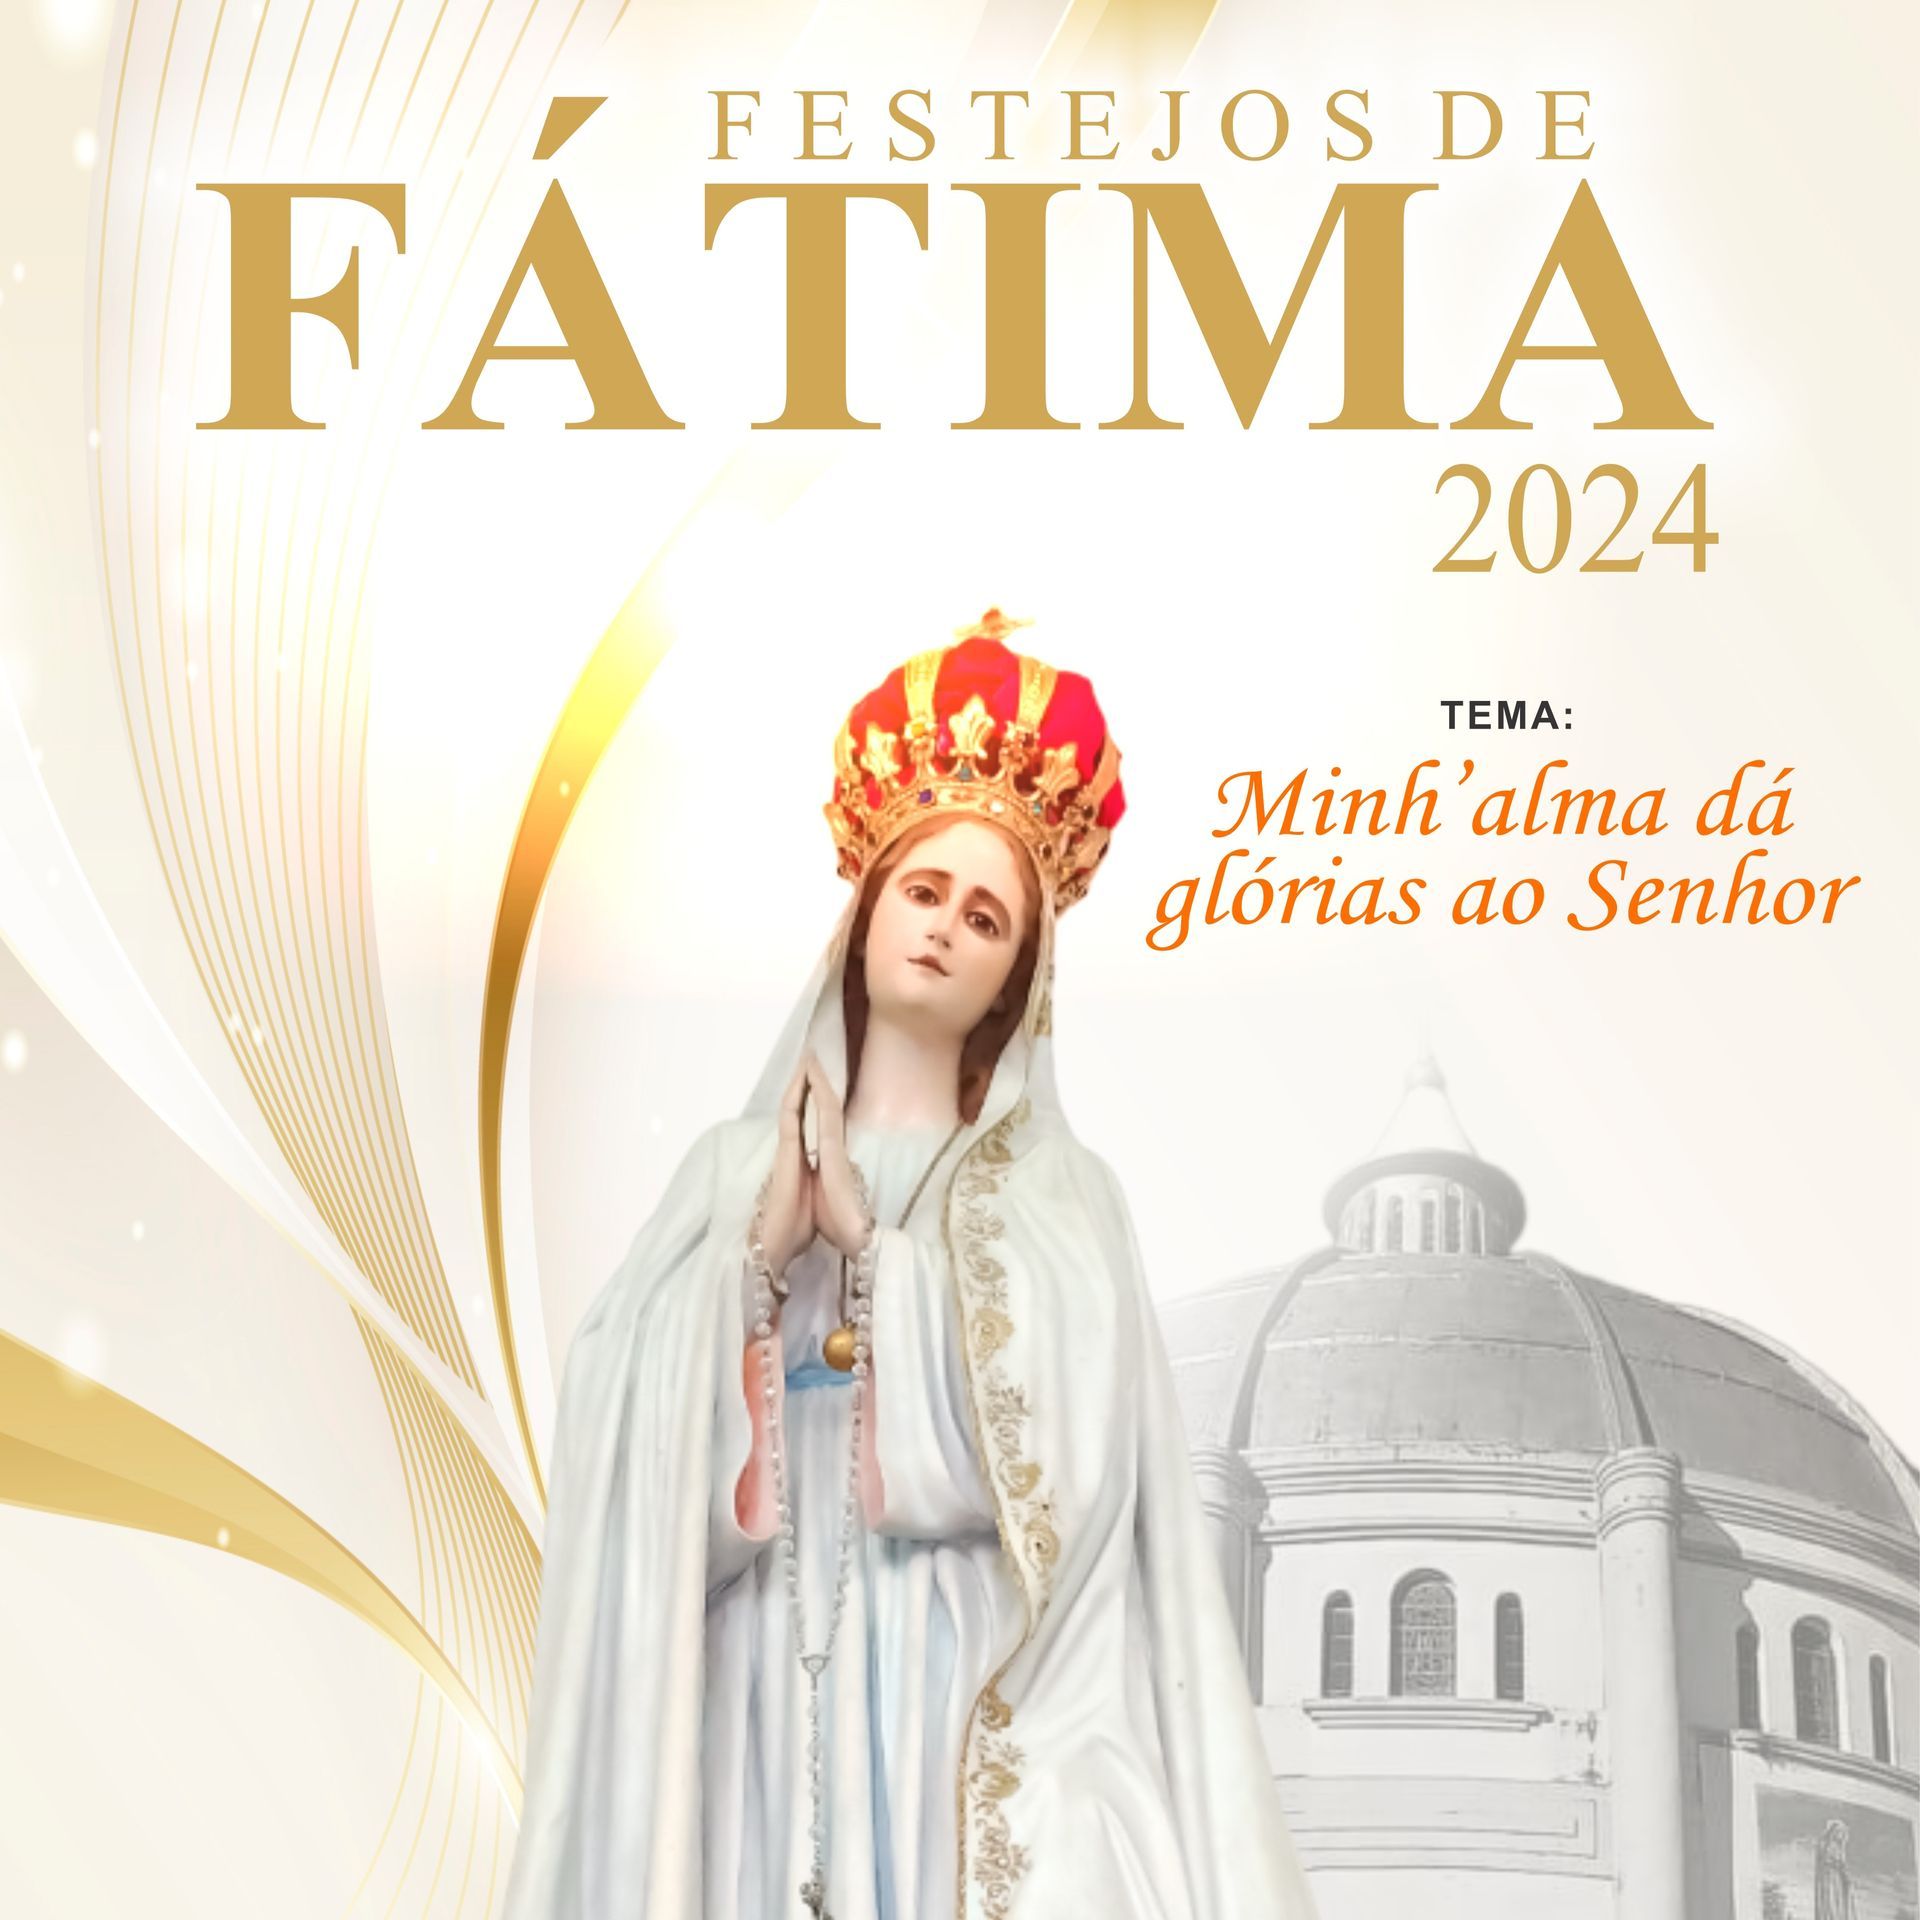 O Santuário Nossa Senhora de Fátima se prepara para a festa da padroeira que acontece no dia 13 de m